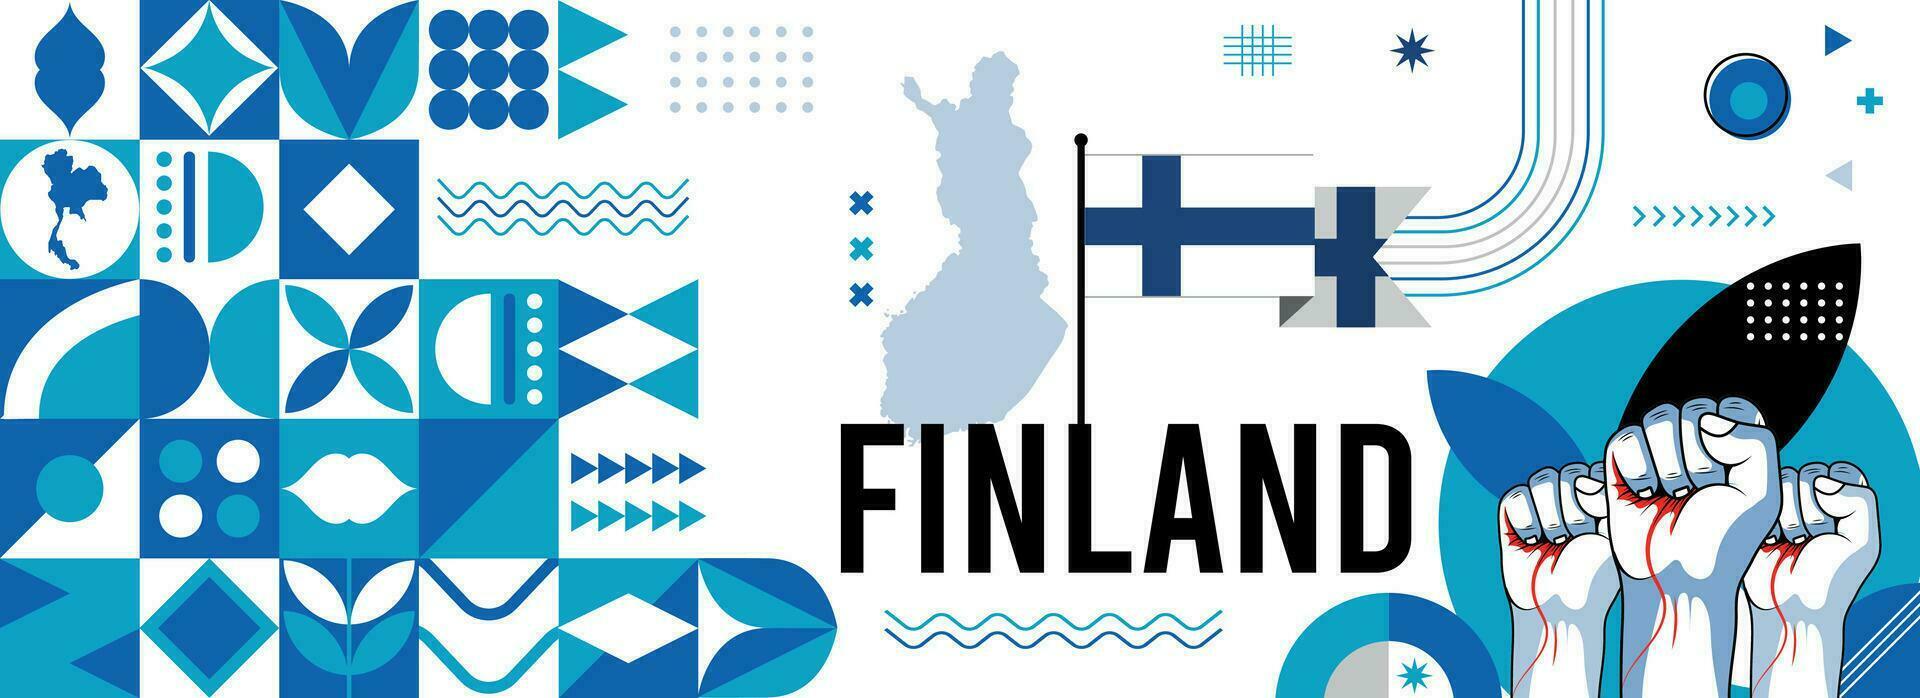 Finlandia nacional o independencia día bandera diseño para país celebracion. bandera y mapa de Finlandia con elevado puños moderno retro diseño con resumen geométrico iconos vector ilustración.